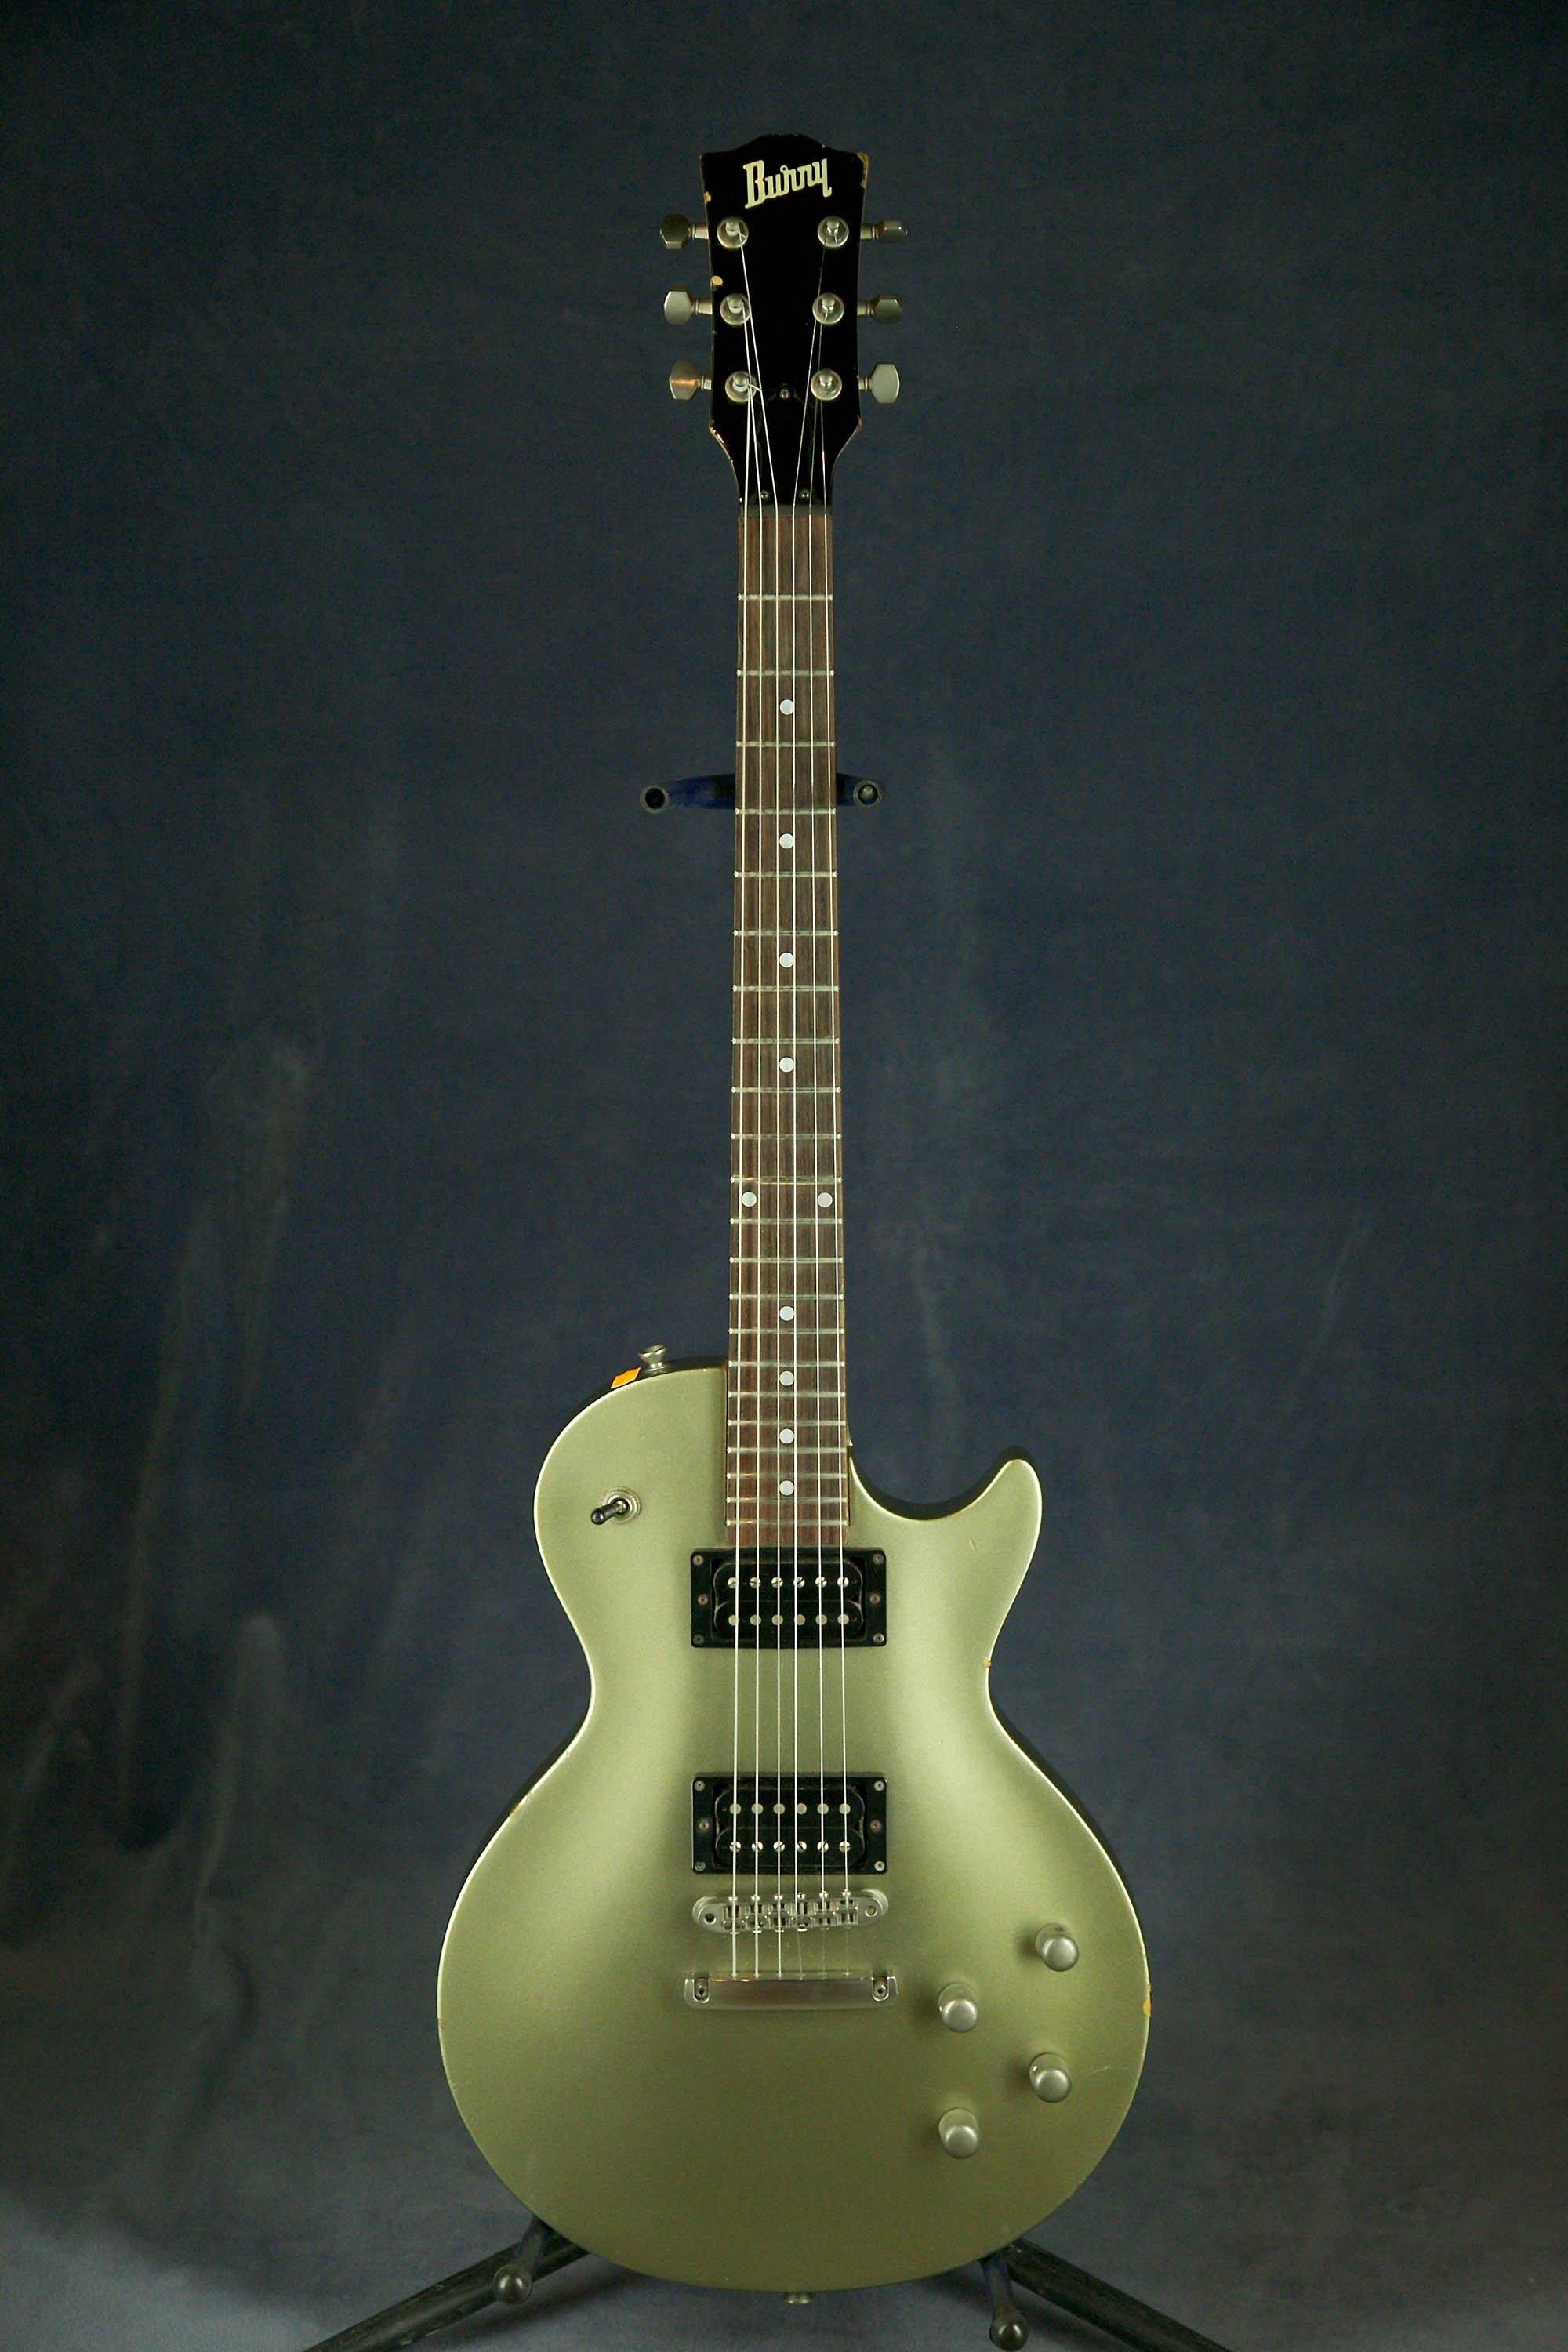 Архив проданных гитар Burny LG-480 (1998) Japan.